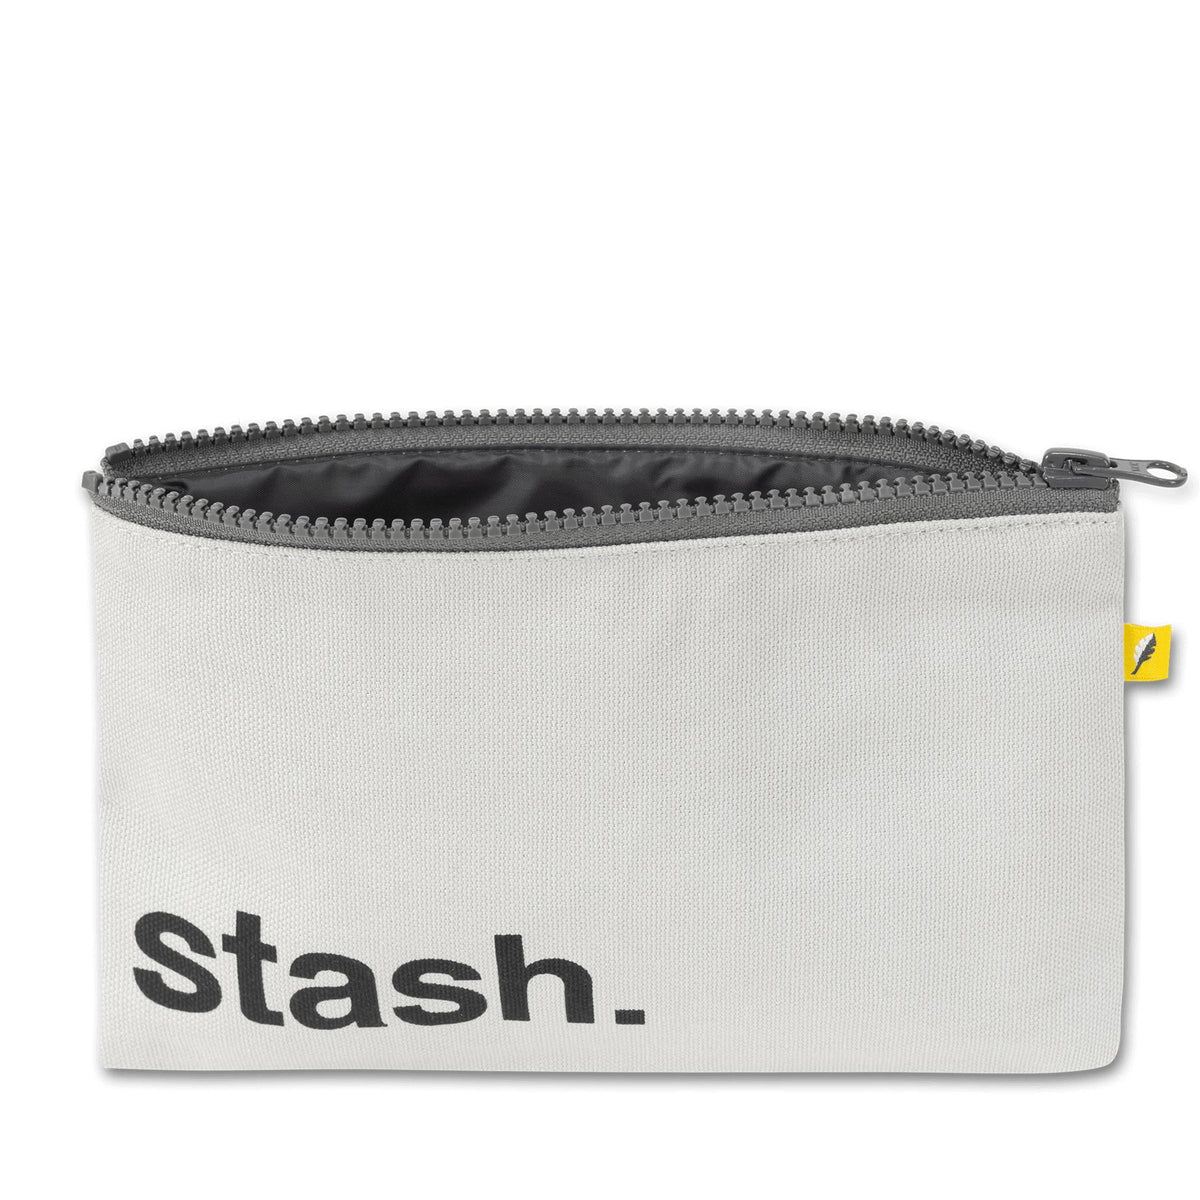 Stash Black (Snack Size)